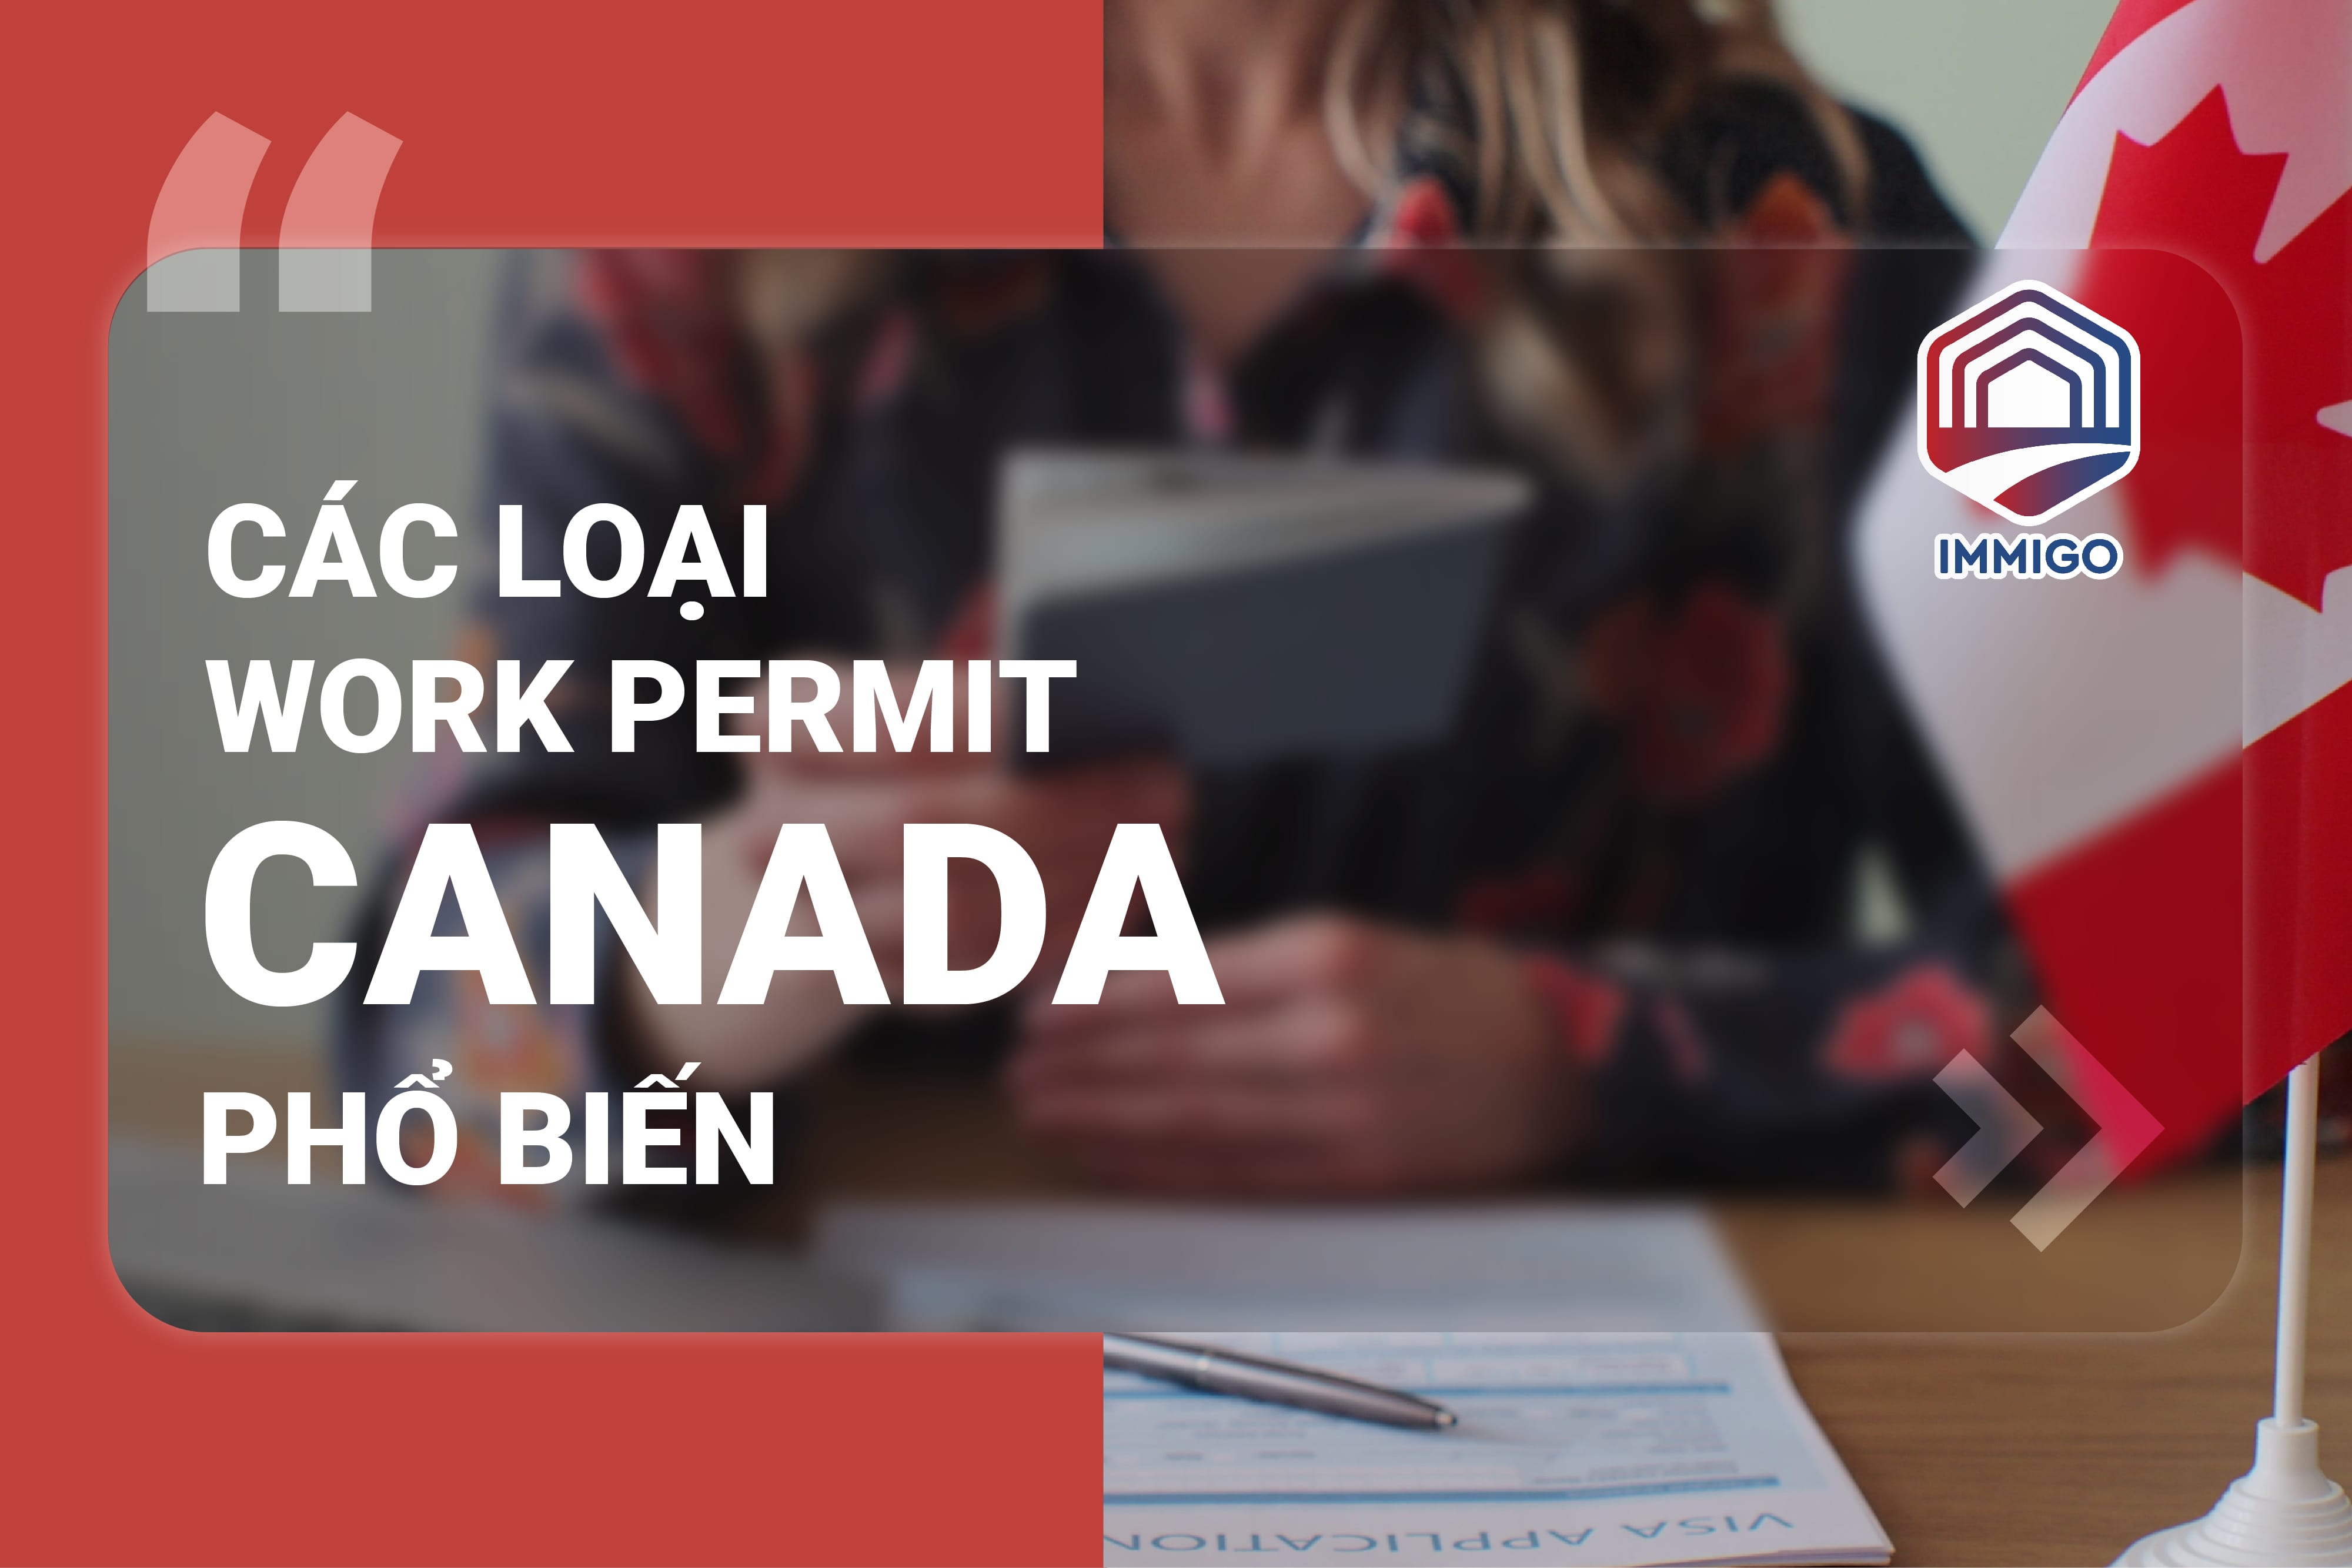 Tìm hiểu về chương trình tay nghề định cư Canada - các loại Work Permit cần biết